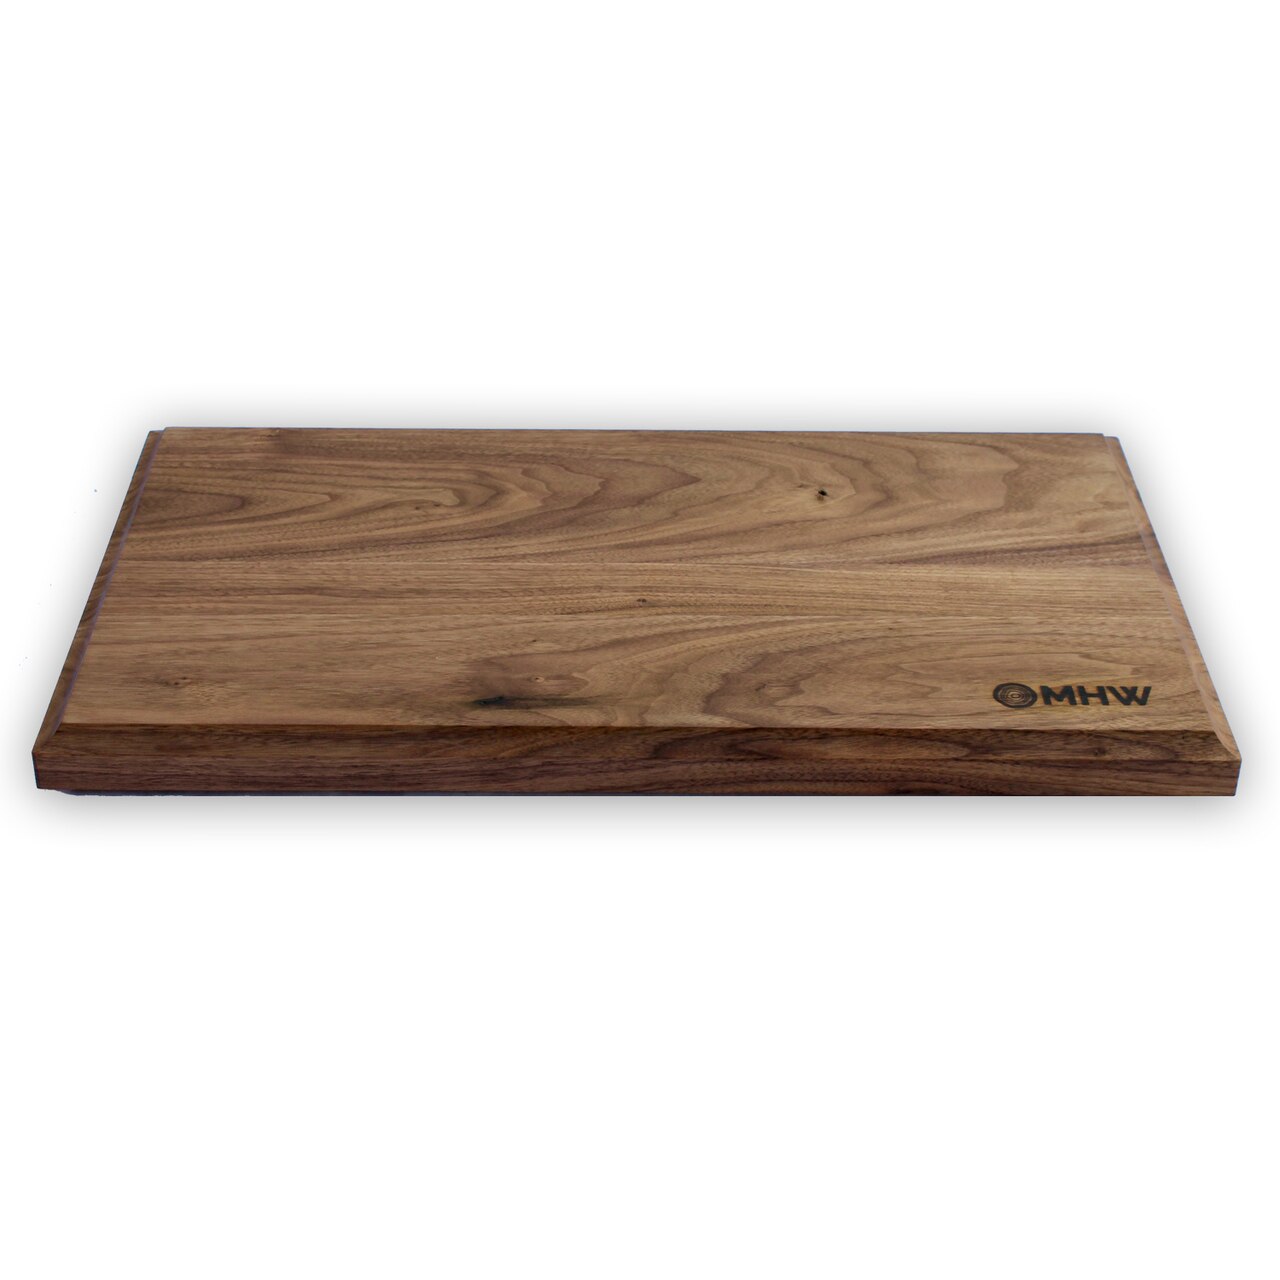 Walnut Cutting Board, Walnut Wood Cutting Boards